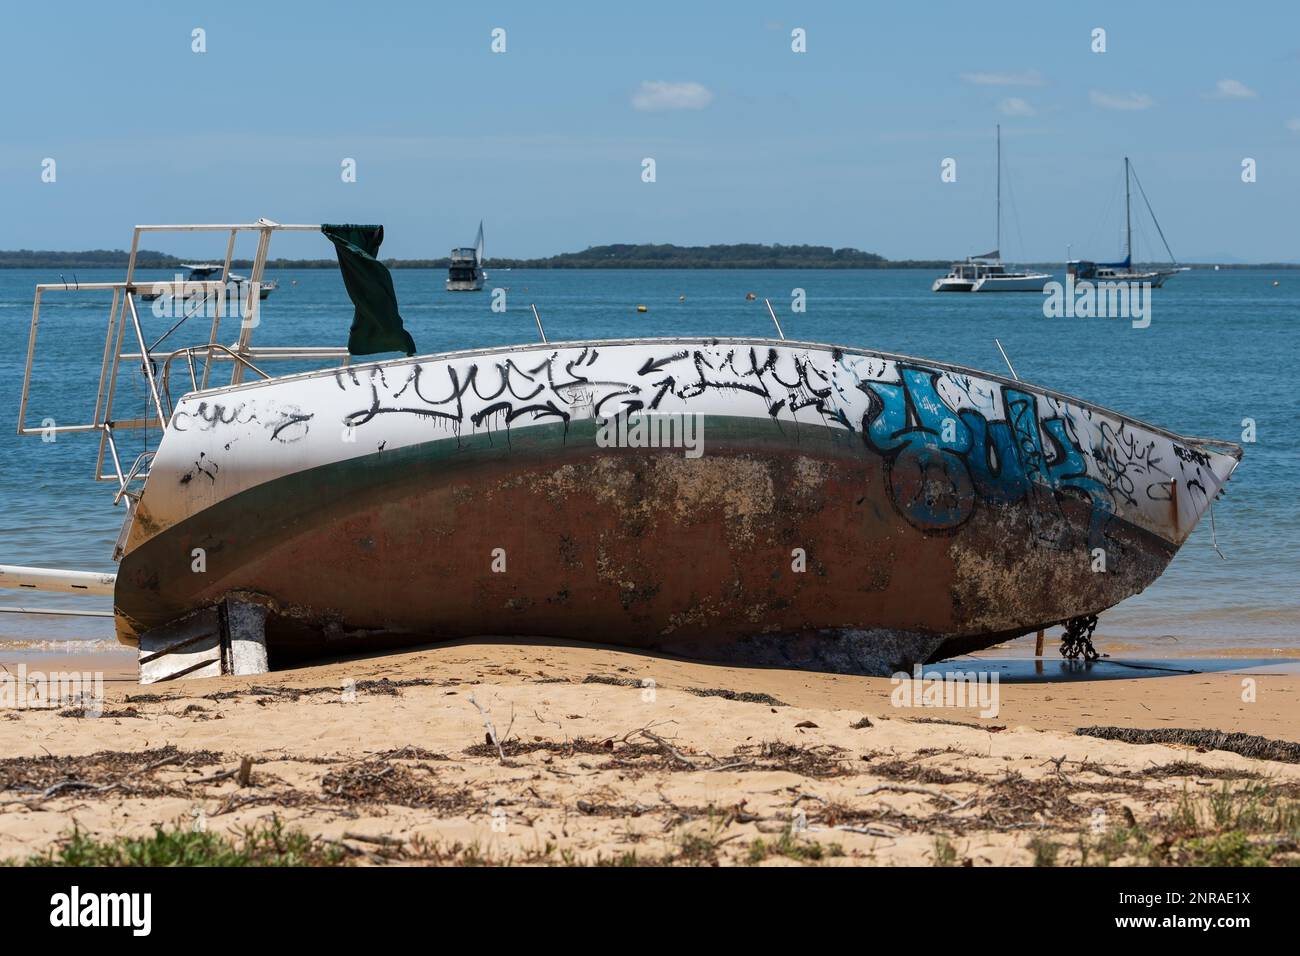 Am Sandstrand liegendes Boot mit Graffiti-überdachtem Rumpf. Stockfoto